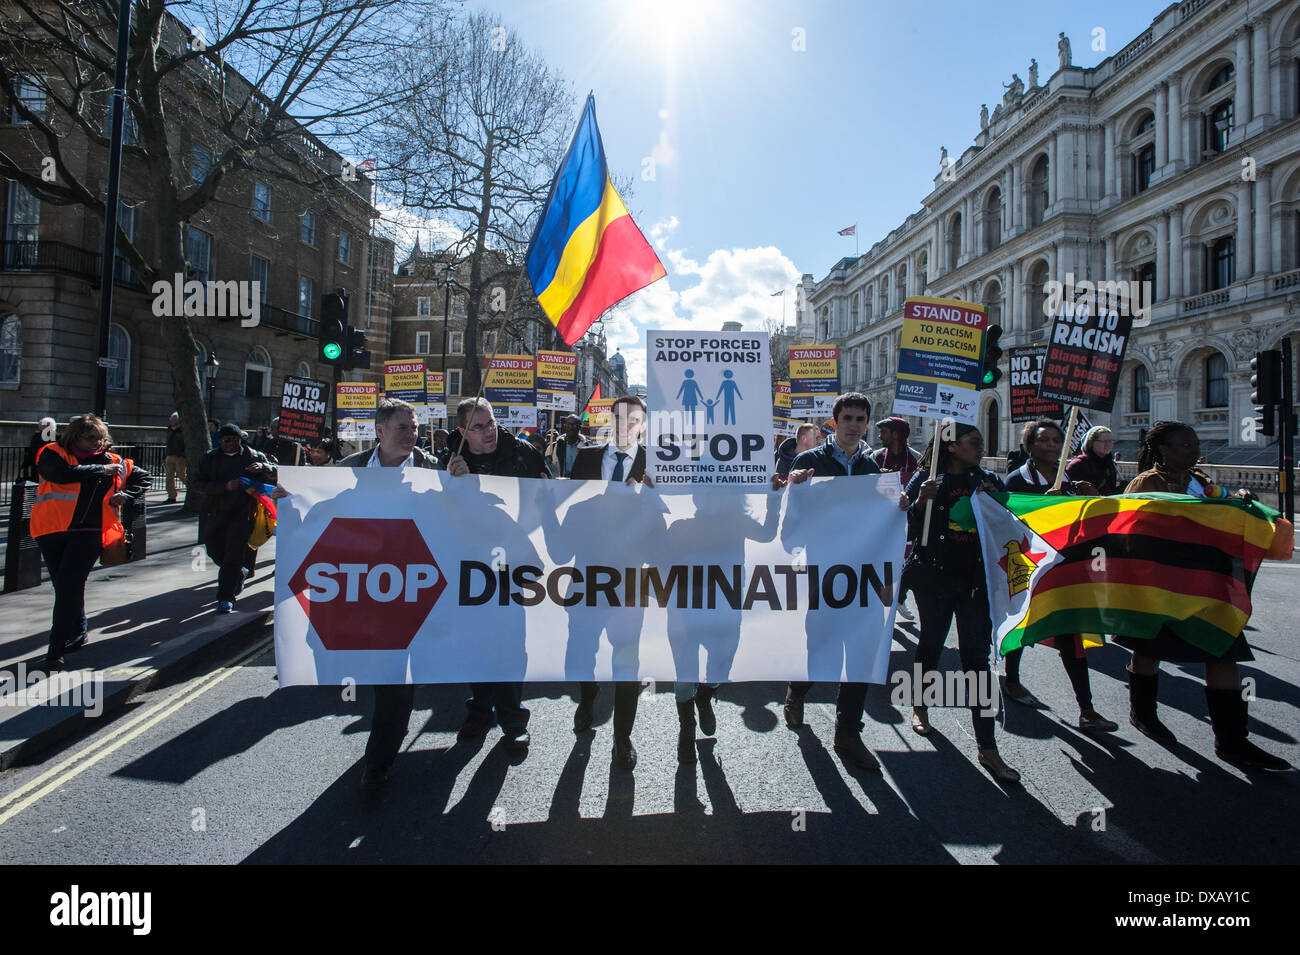 London, UK - 22. März 2014: Demonstranten halten einen Banner lesen "Diskriminierung stoppen", um International-Anti-Rassismus-Tag der Vereinten Nationen zu feiern. Bildnachweis: Piero Cruciatti/Alamy Live-Nachrichten Stockfoto